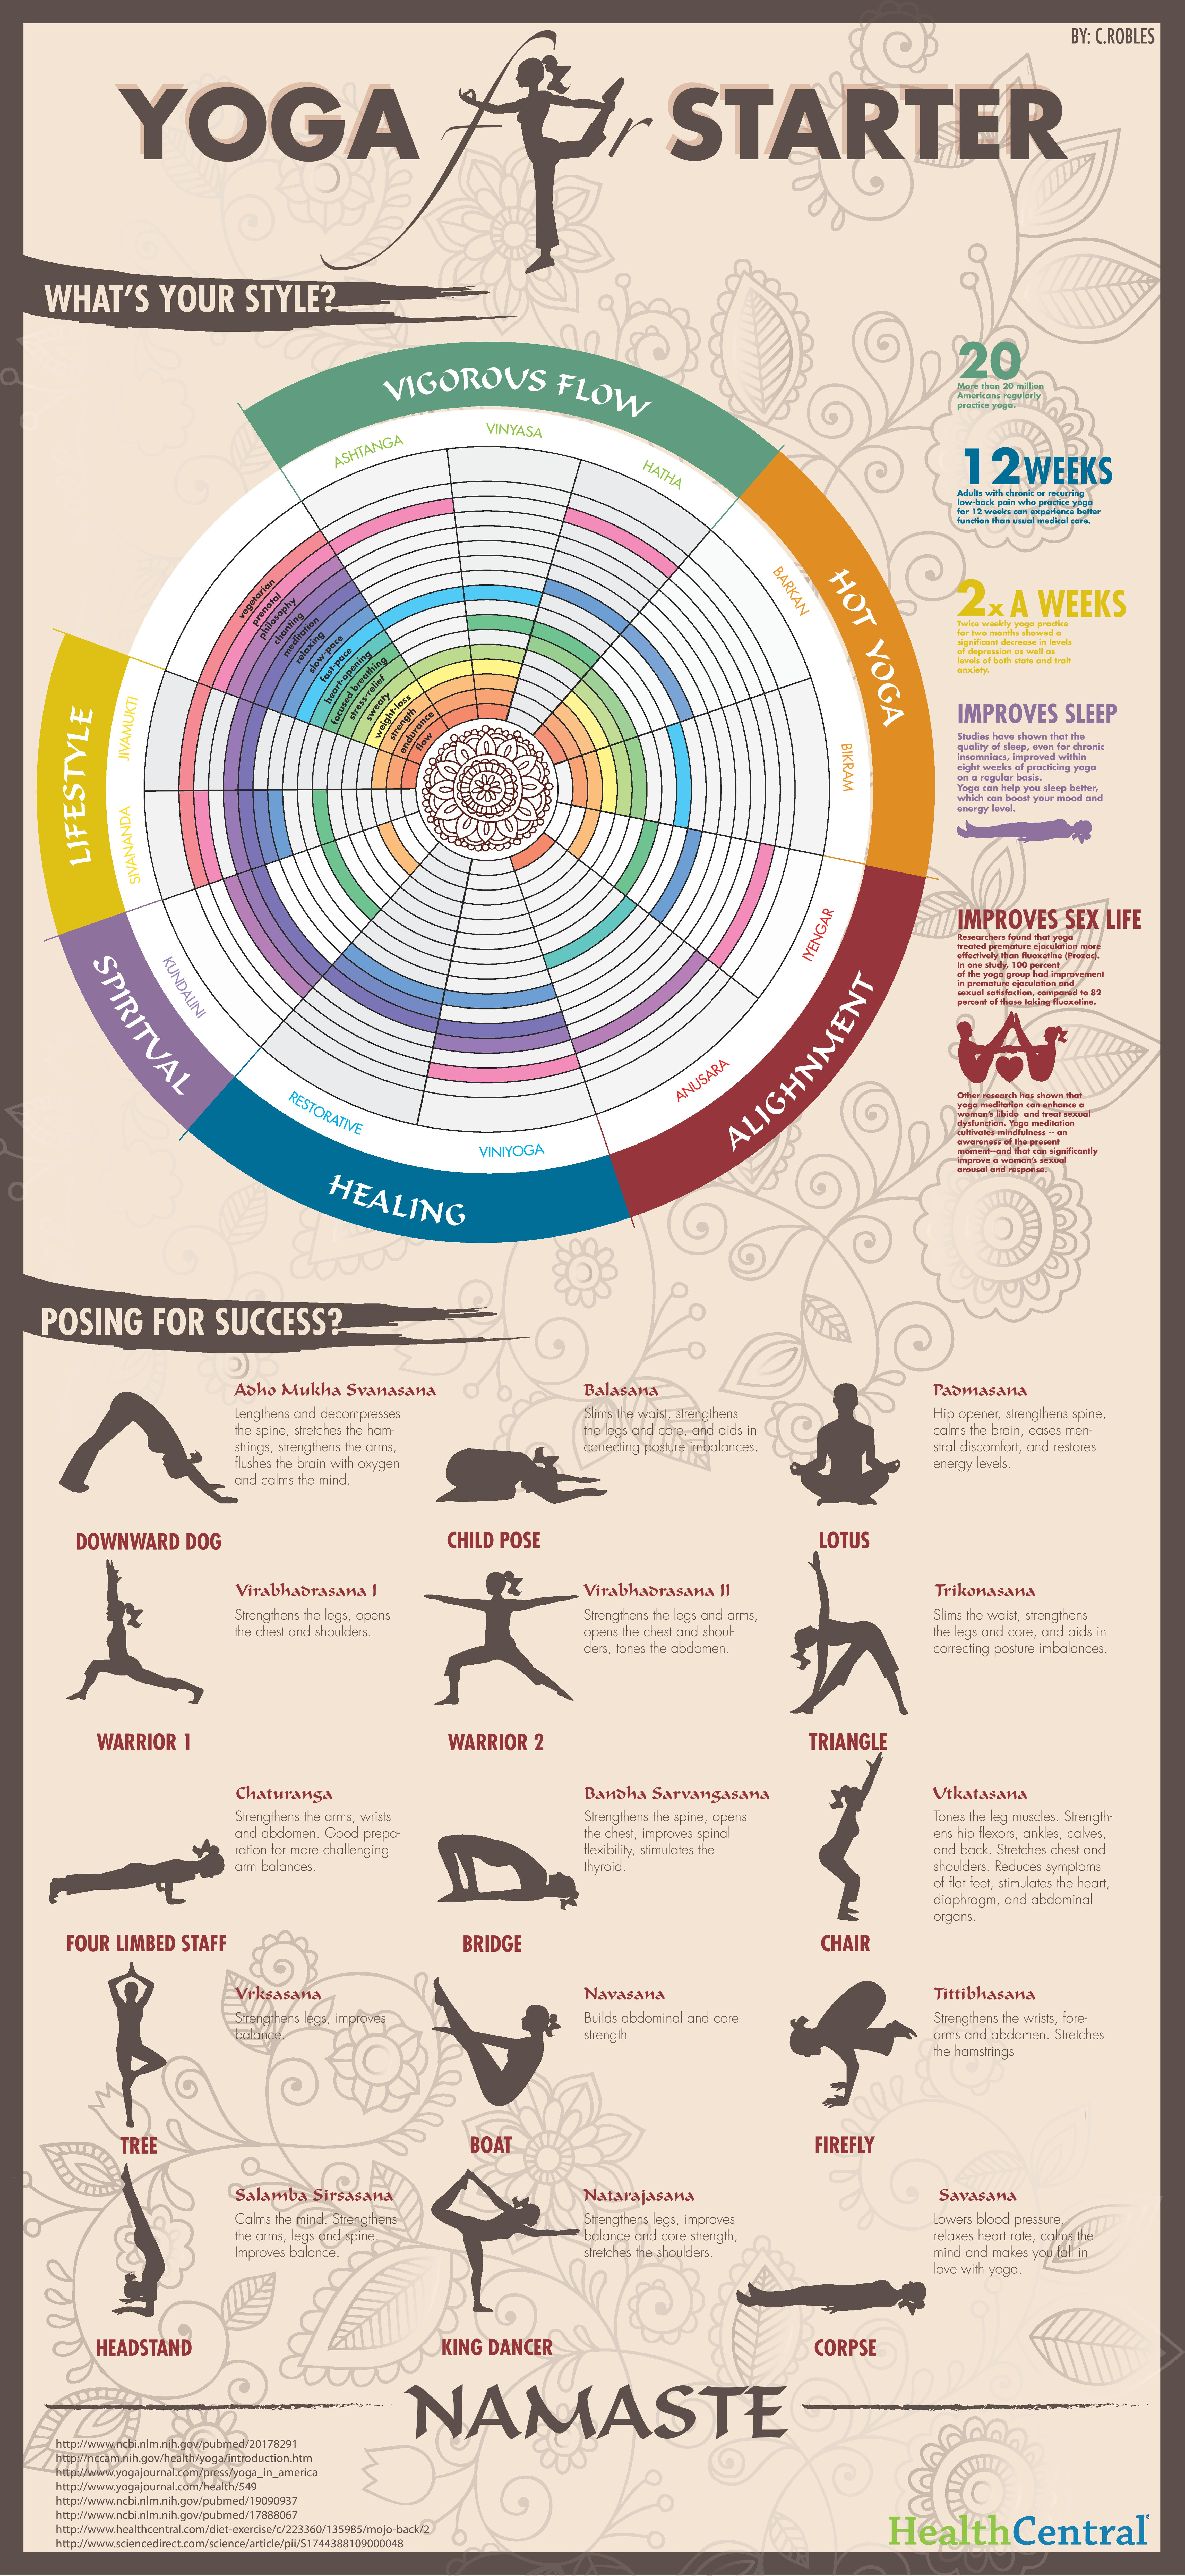 Yoga_for_starter_Infographic